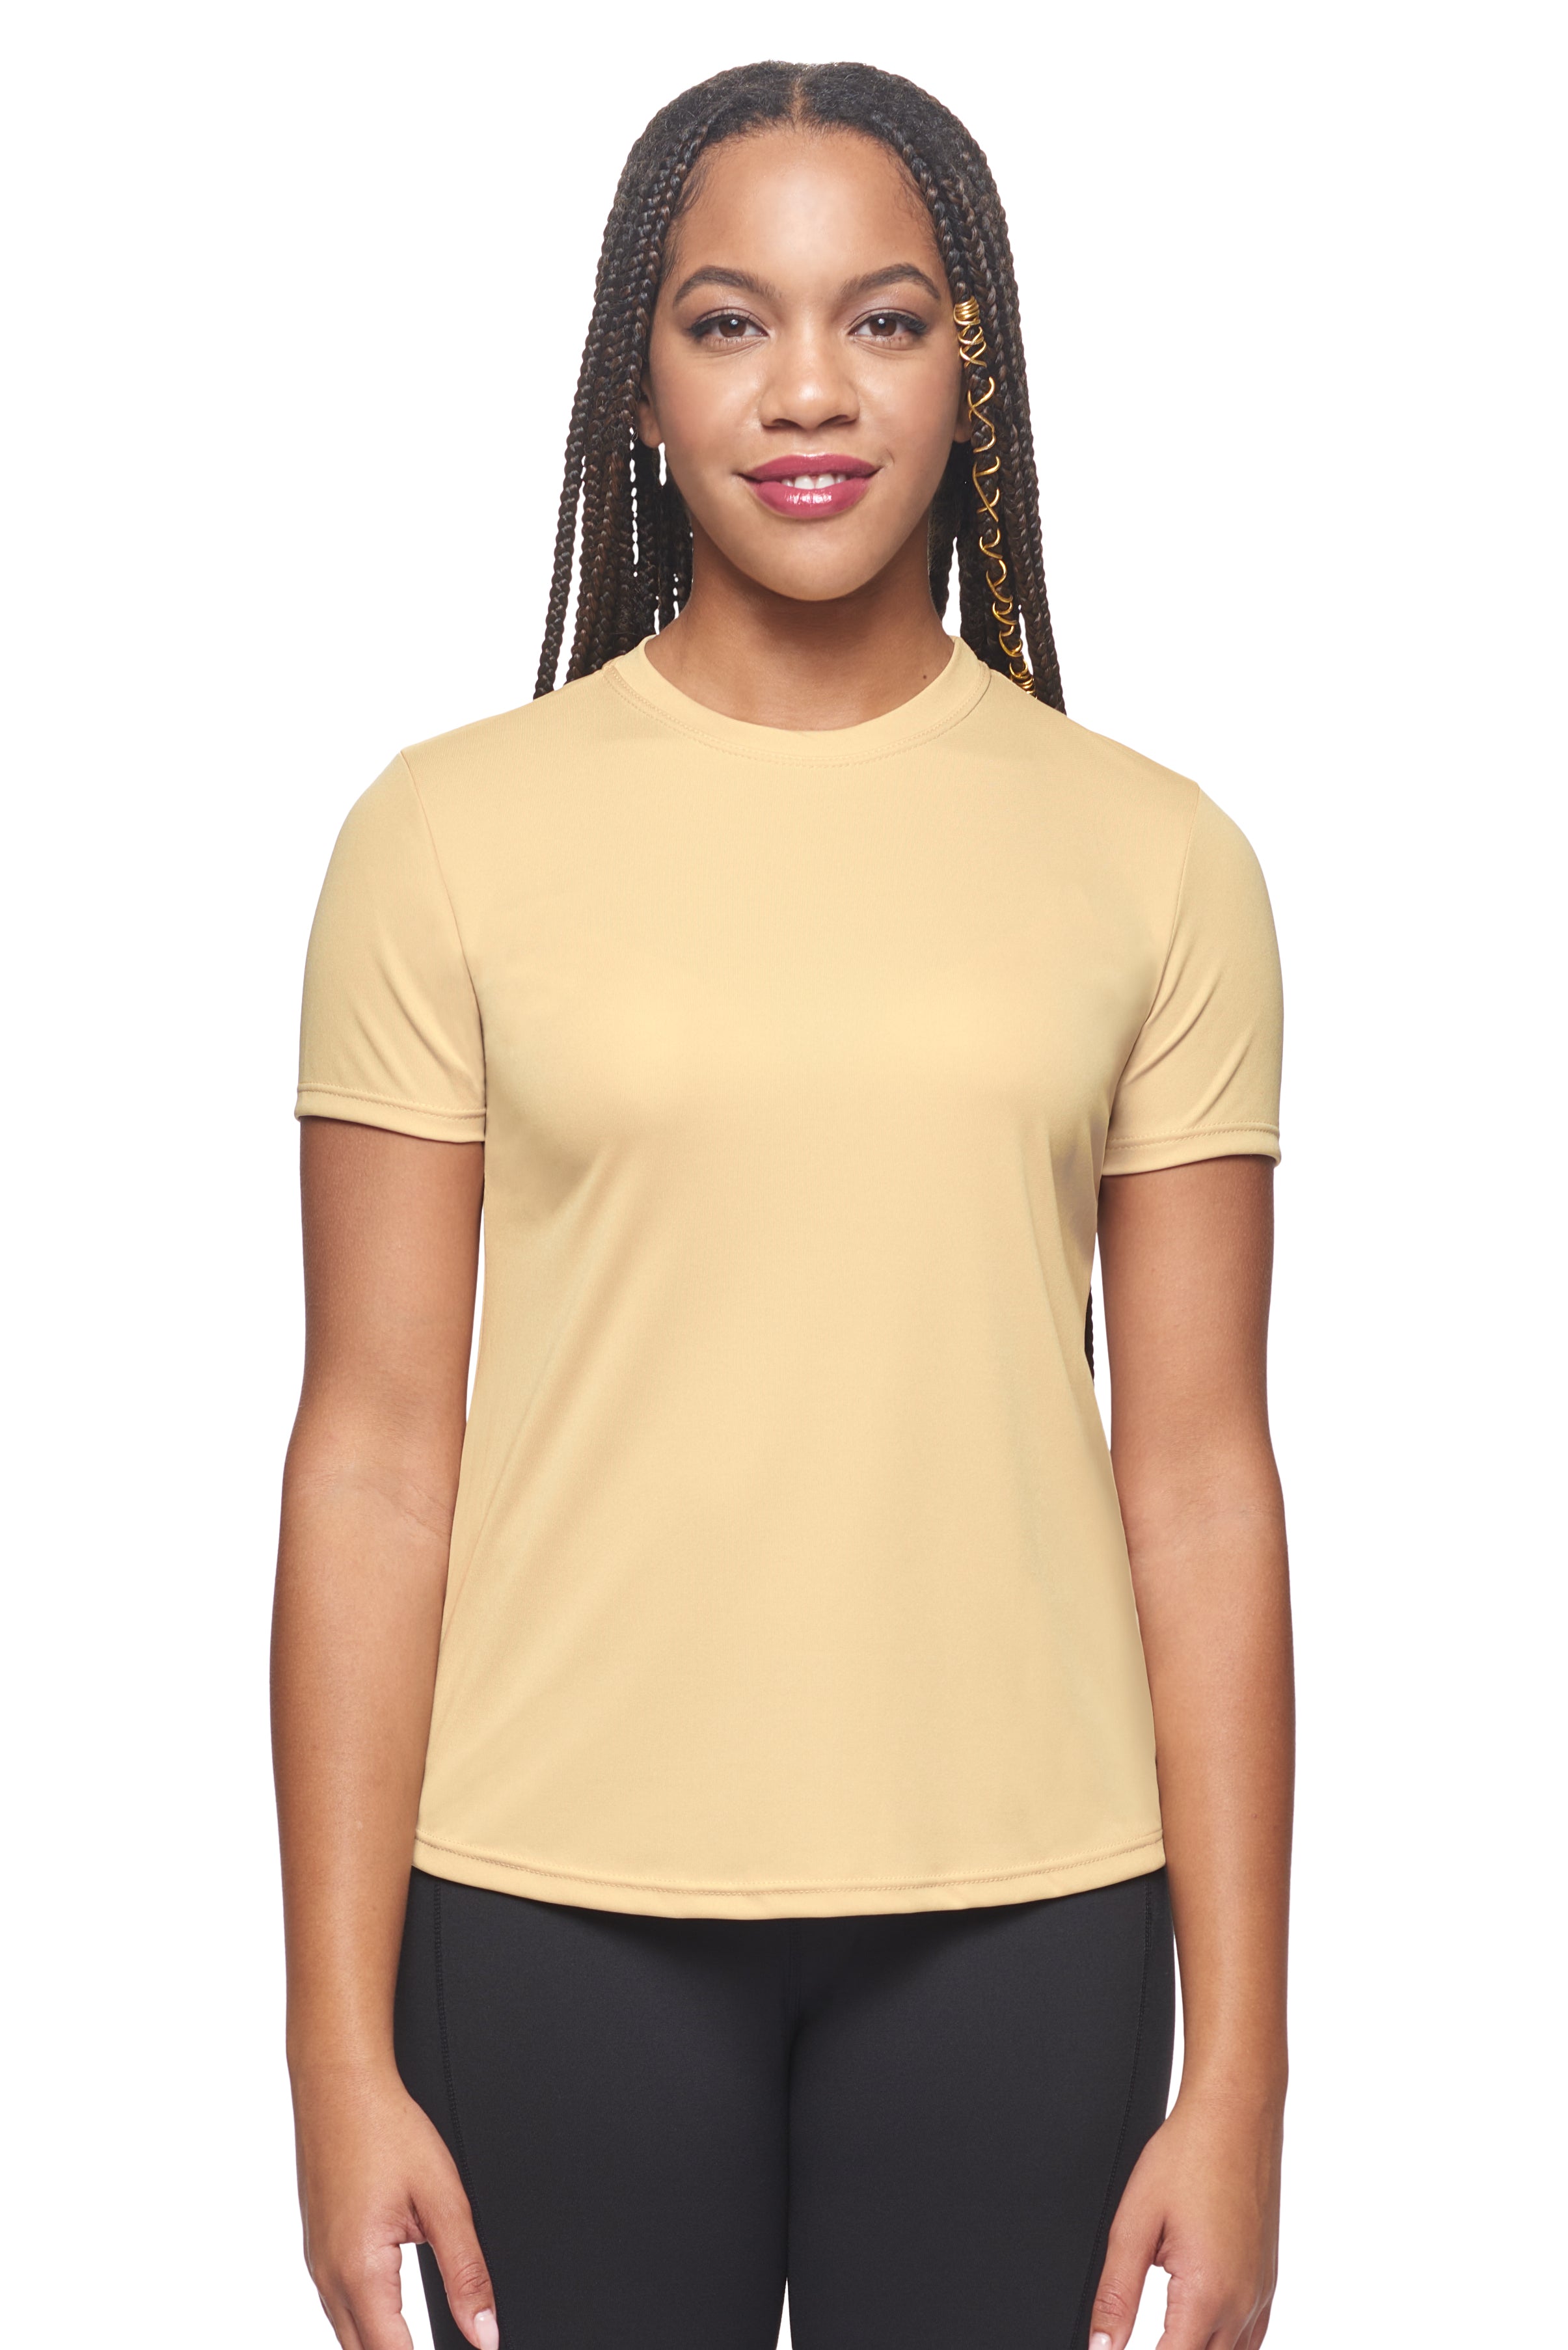 Women's DriMax Short Sleeve Expert T-Shirt